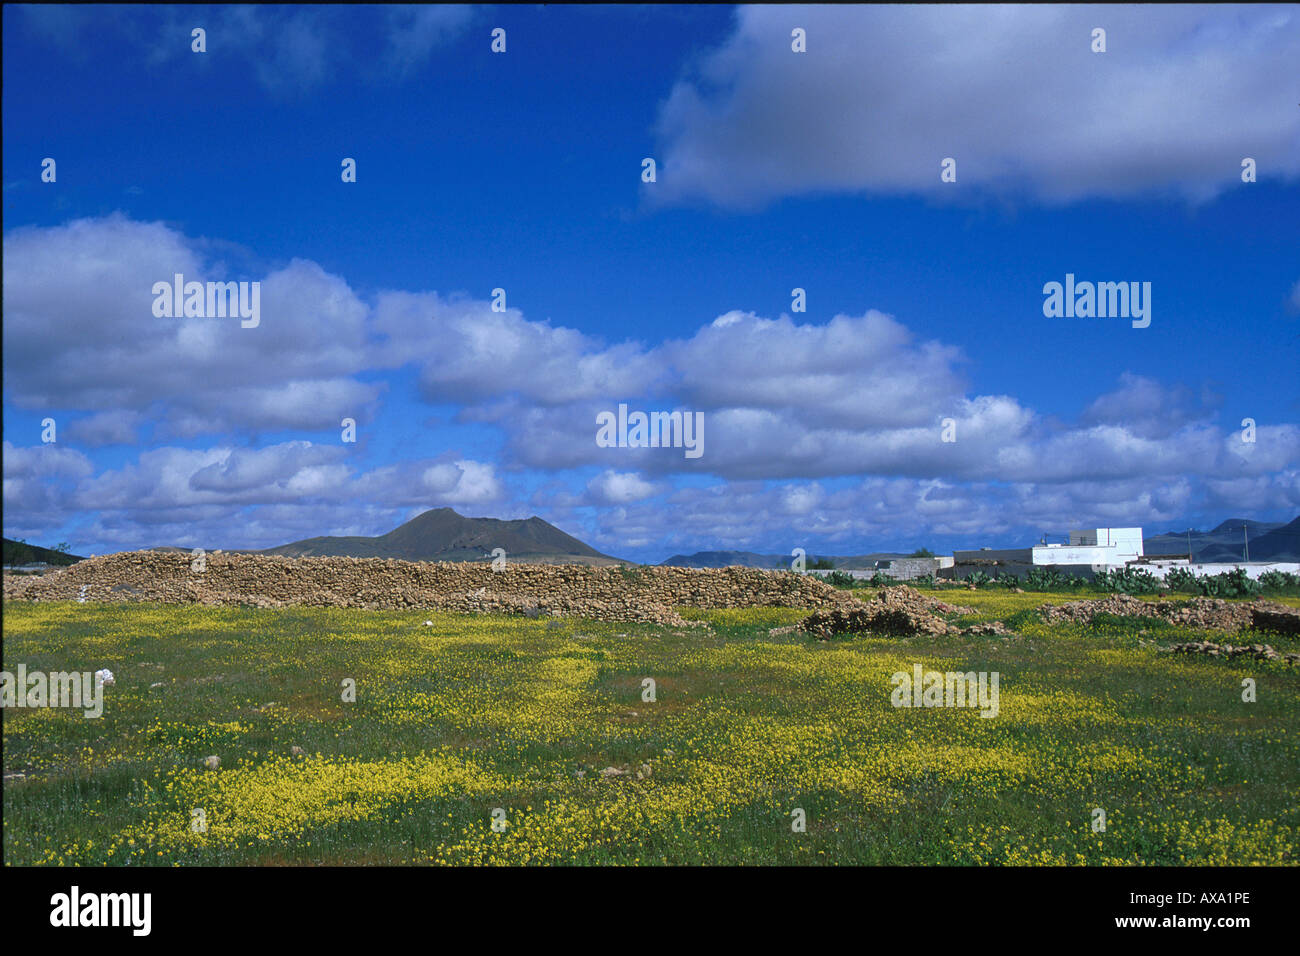 Blumenwiese, Vulkan bei Tuineje, Fuerteventura, Kanarische Inseln Spanien, Europa Banque D'Images